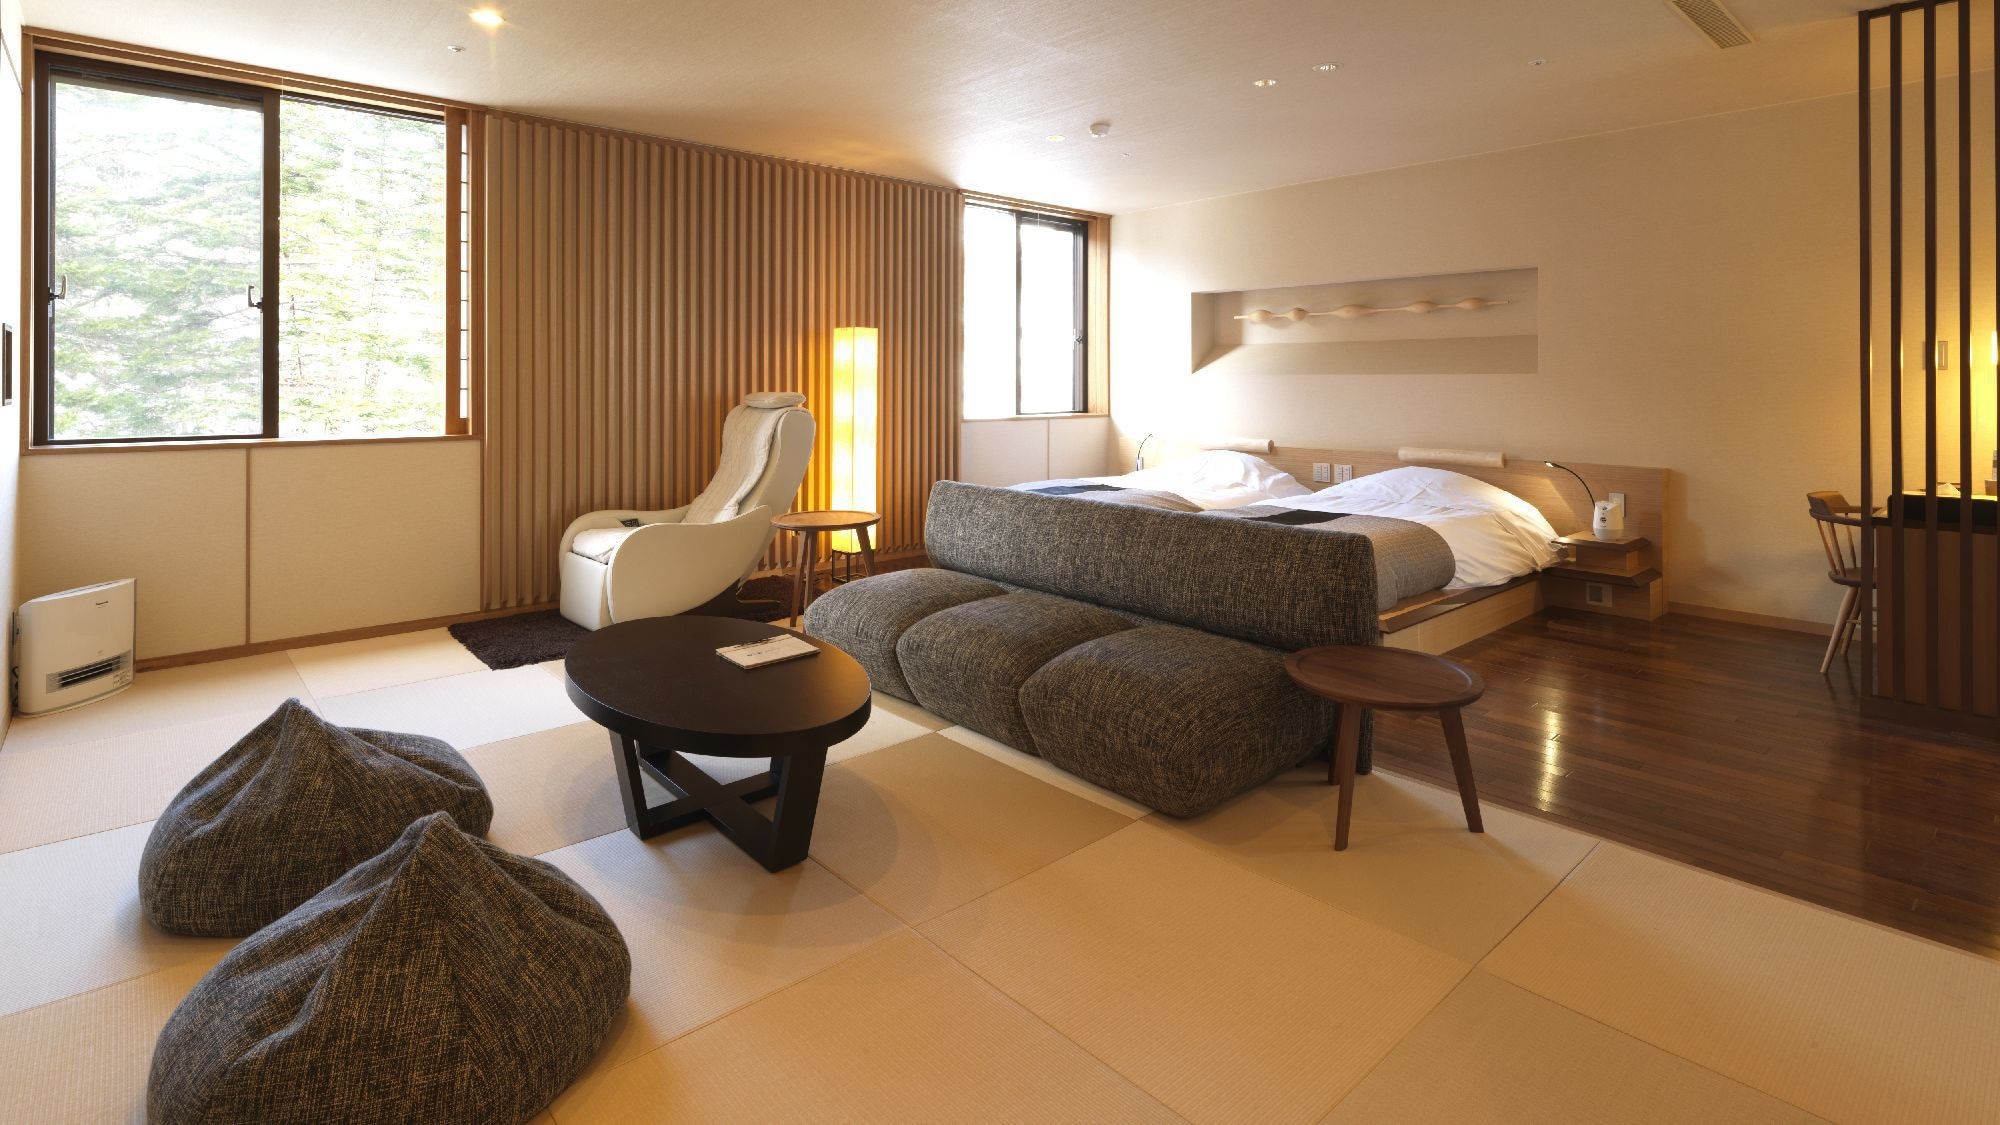 Suite dengan pemandian air panas terbuka (contoh) / Tempat tidur twin + ruang tatami, tipe kamar Jepang dan Barat.